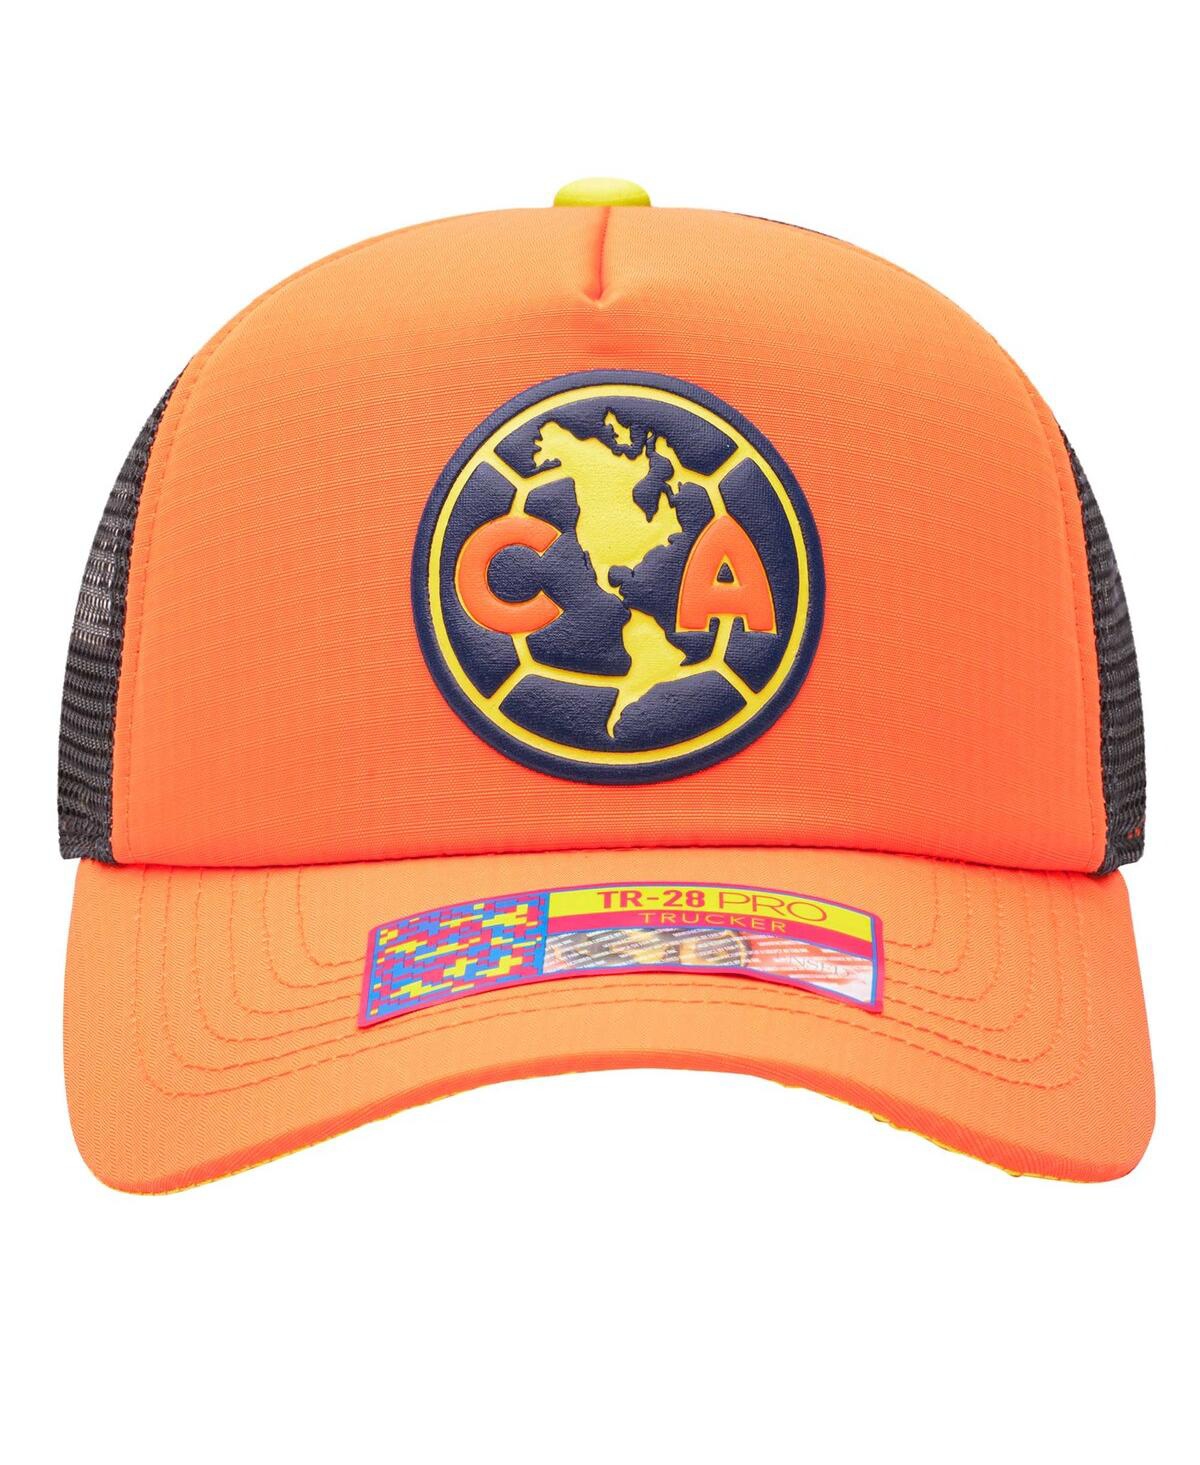 Shop Fan Ink Men's Orange Club America Trucker Adjustable Hat